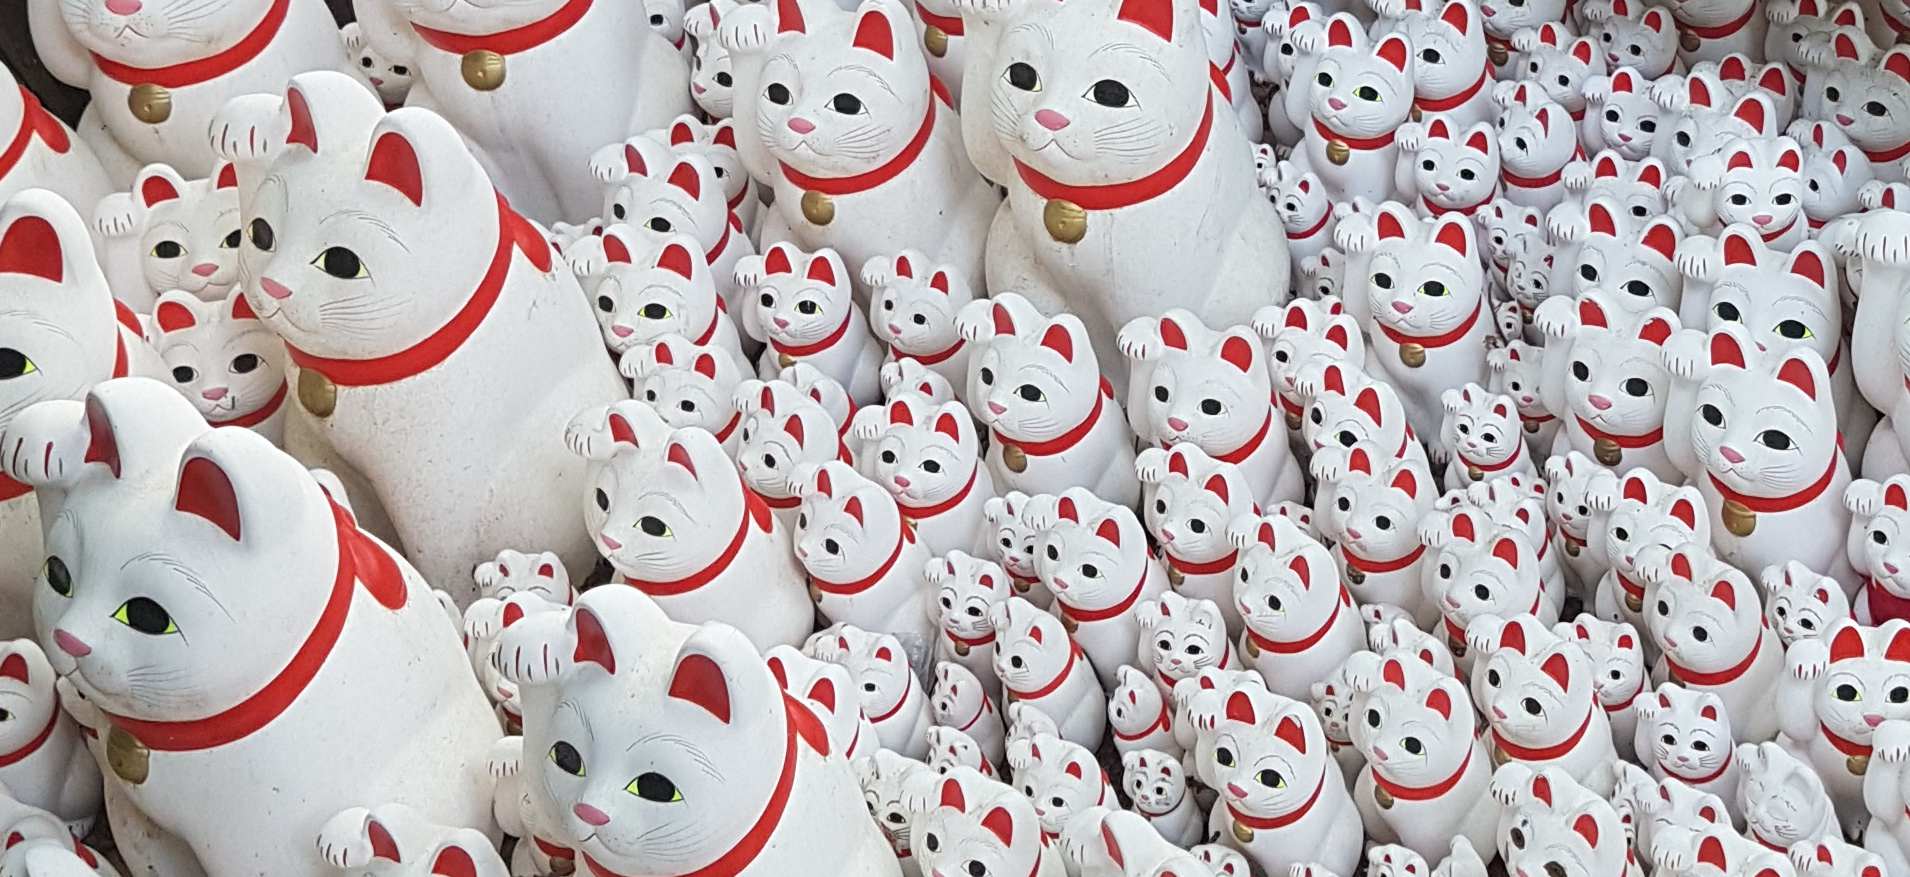 Gotokuji, el templo de “gatos de la suerte” que atrae a instagramers de todo el mundo